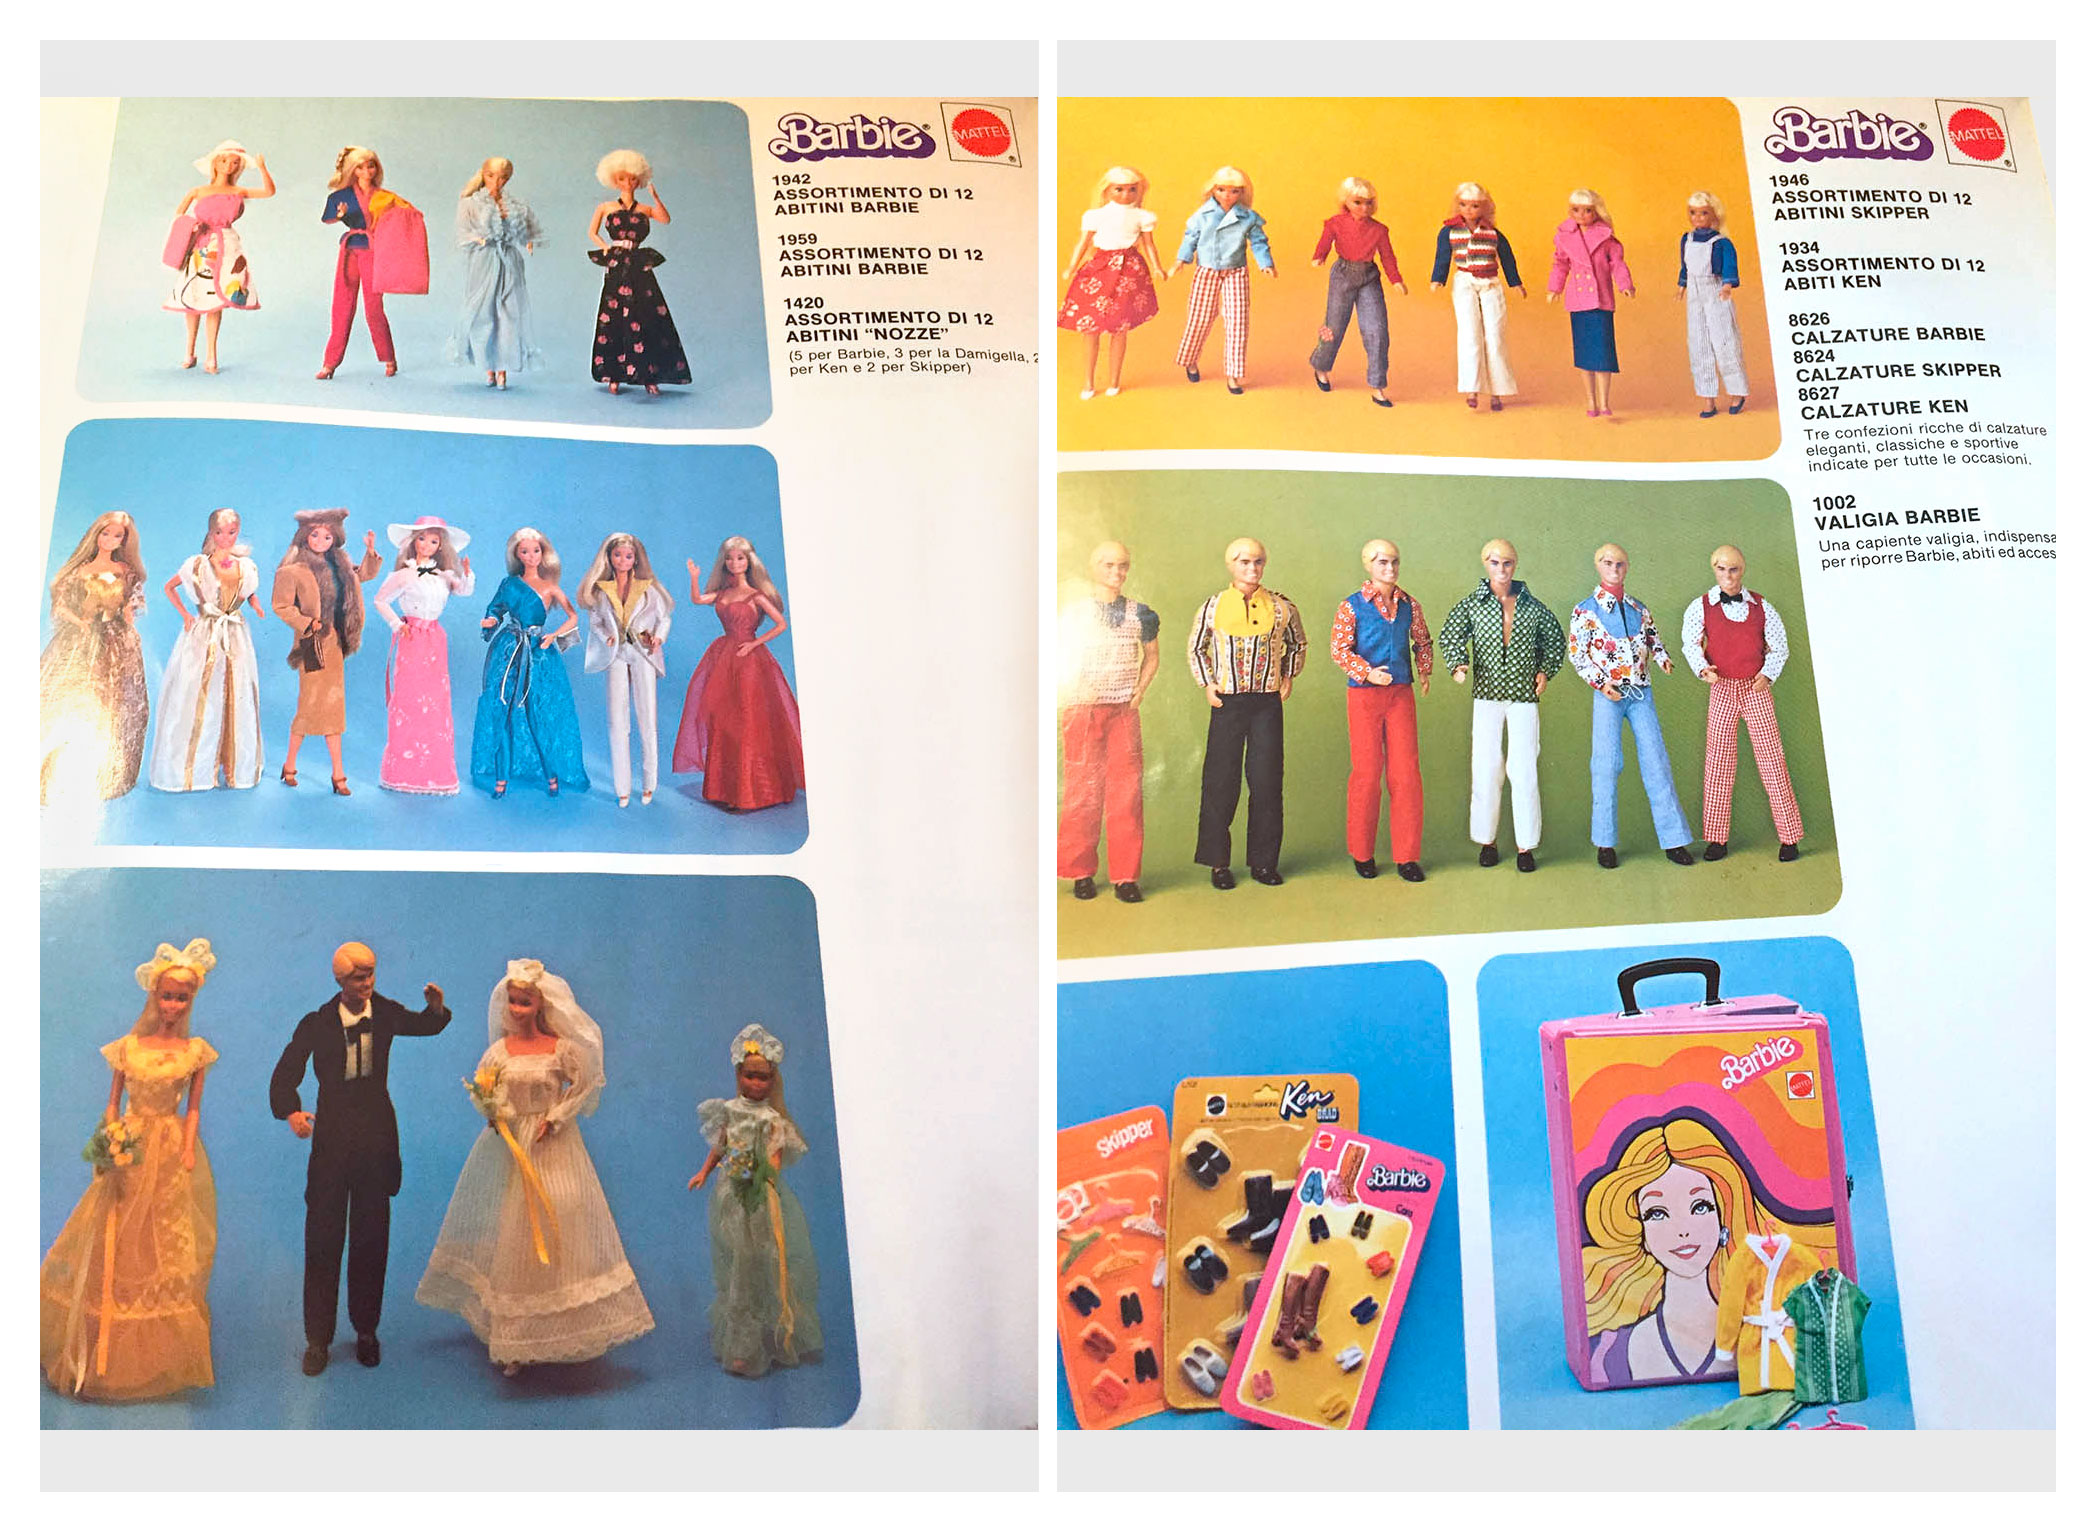 From Italian Mattel Giocattoli 1981 catalogue